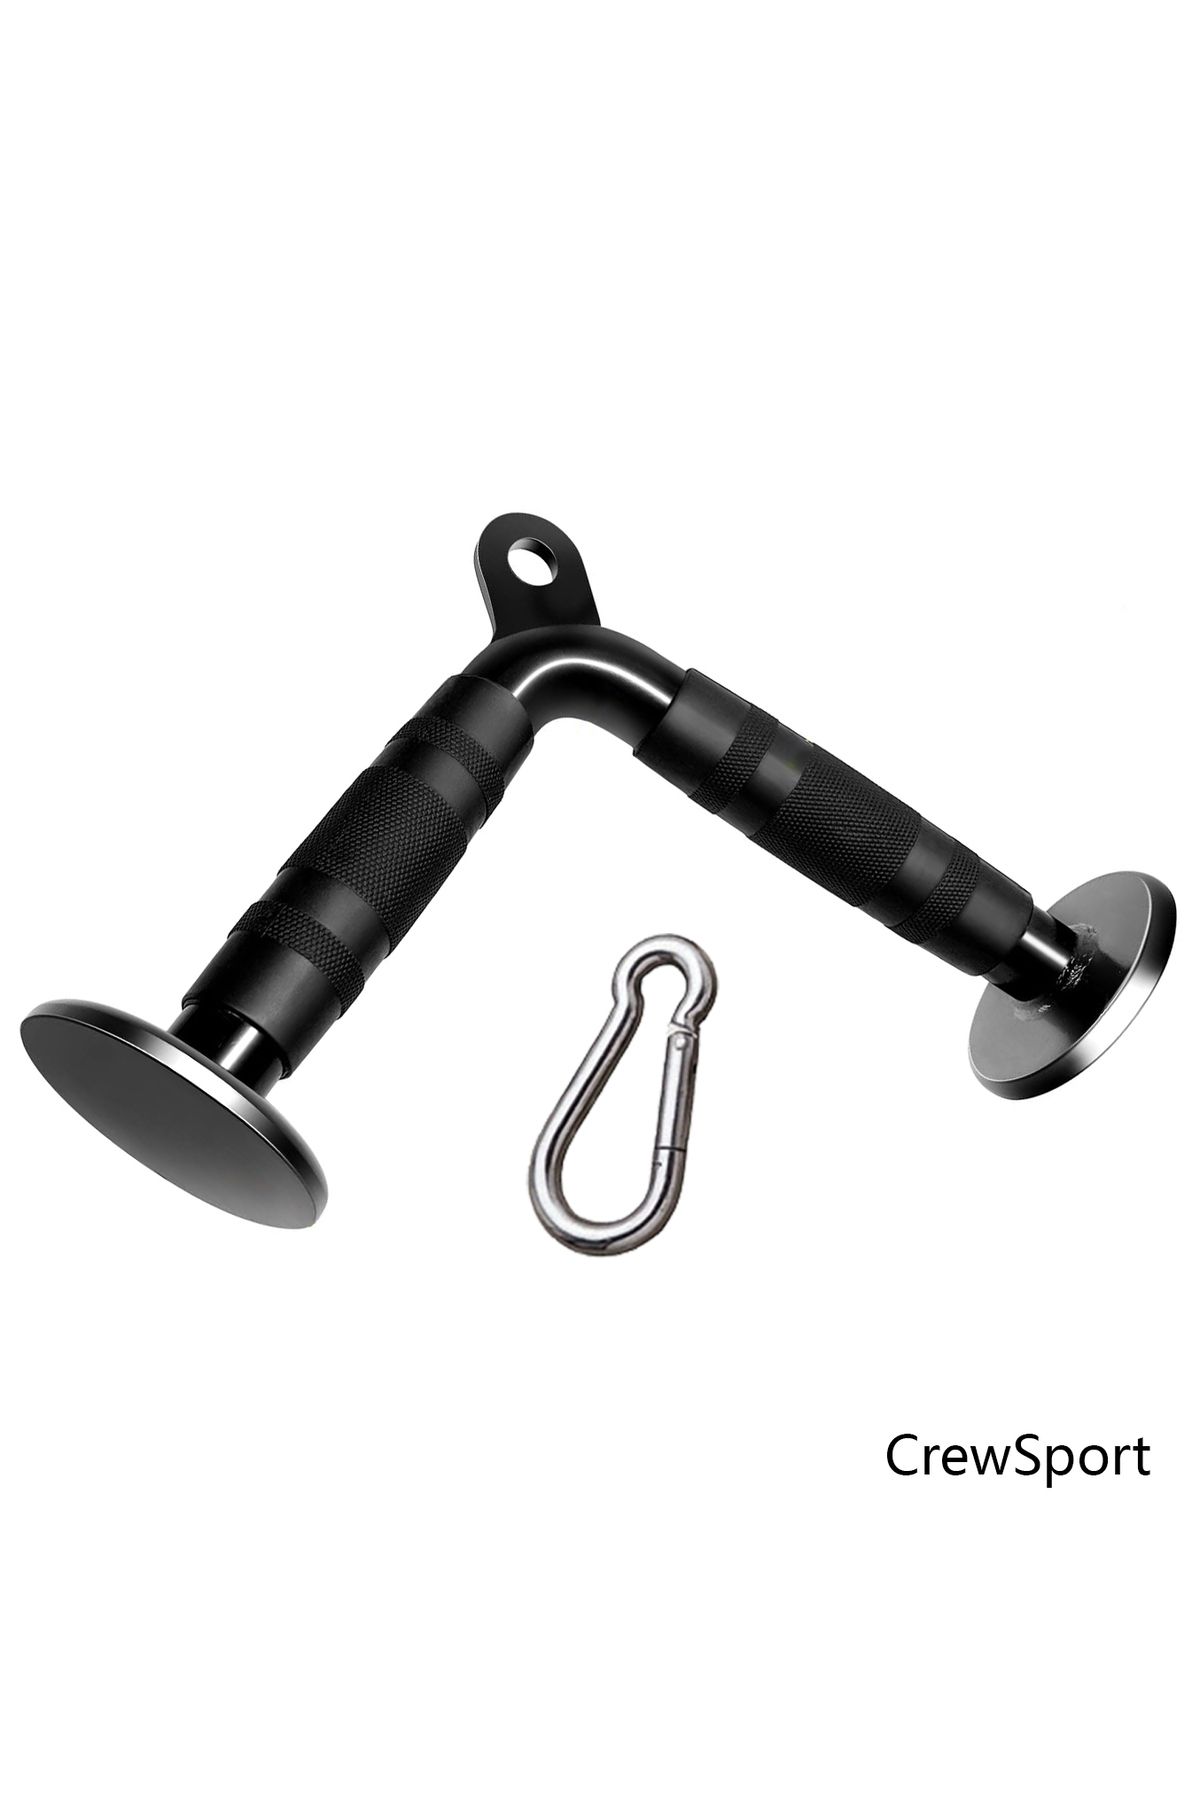 CrewSport V Bar Triceps Bar - Handle Bar - Triceps Çekiş Bar - Çalışma Istasyonu Aparatı - Fitness Aparatları